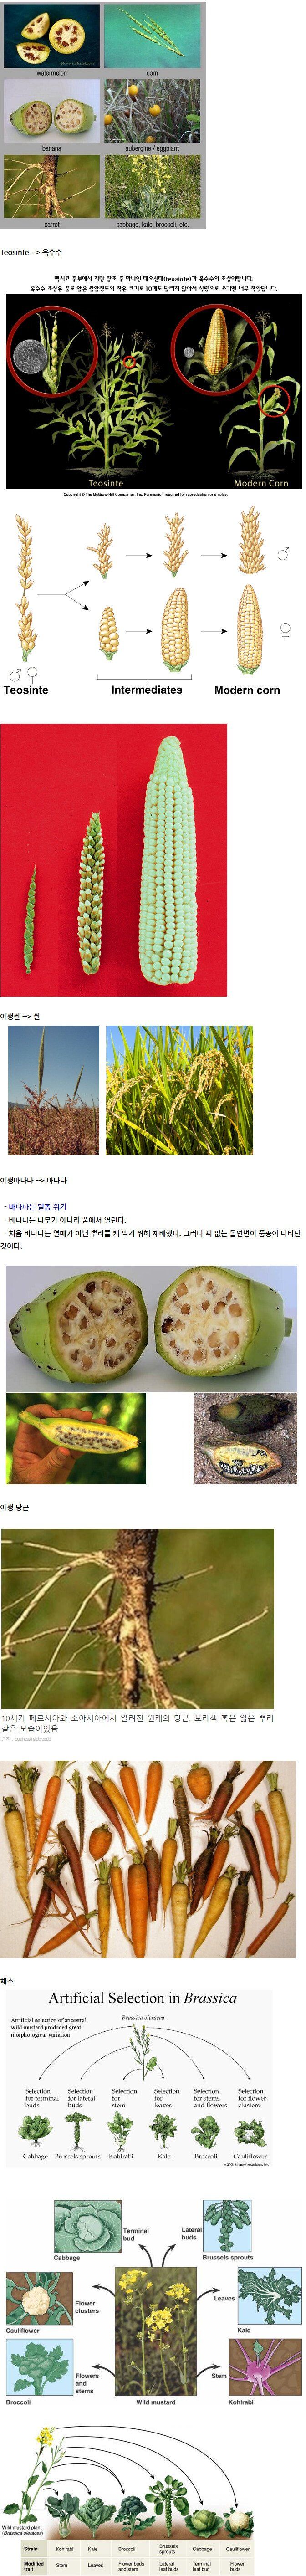 농산물 재래종 vs 육종.jpg